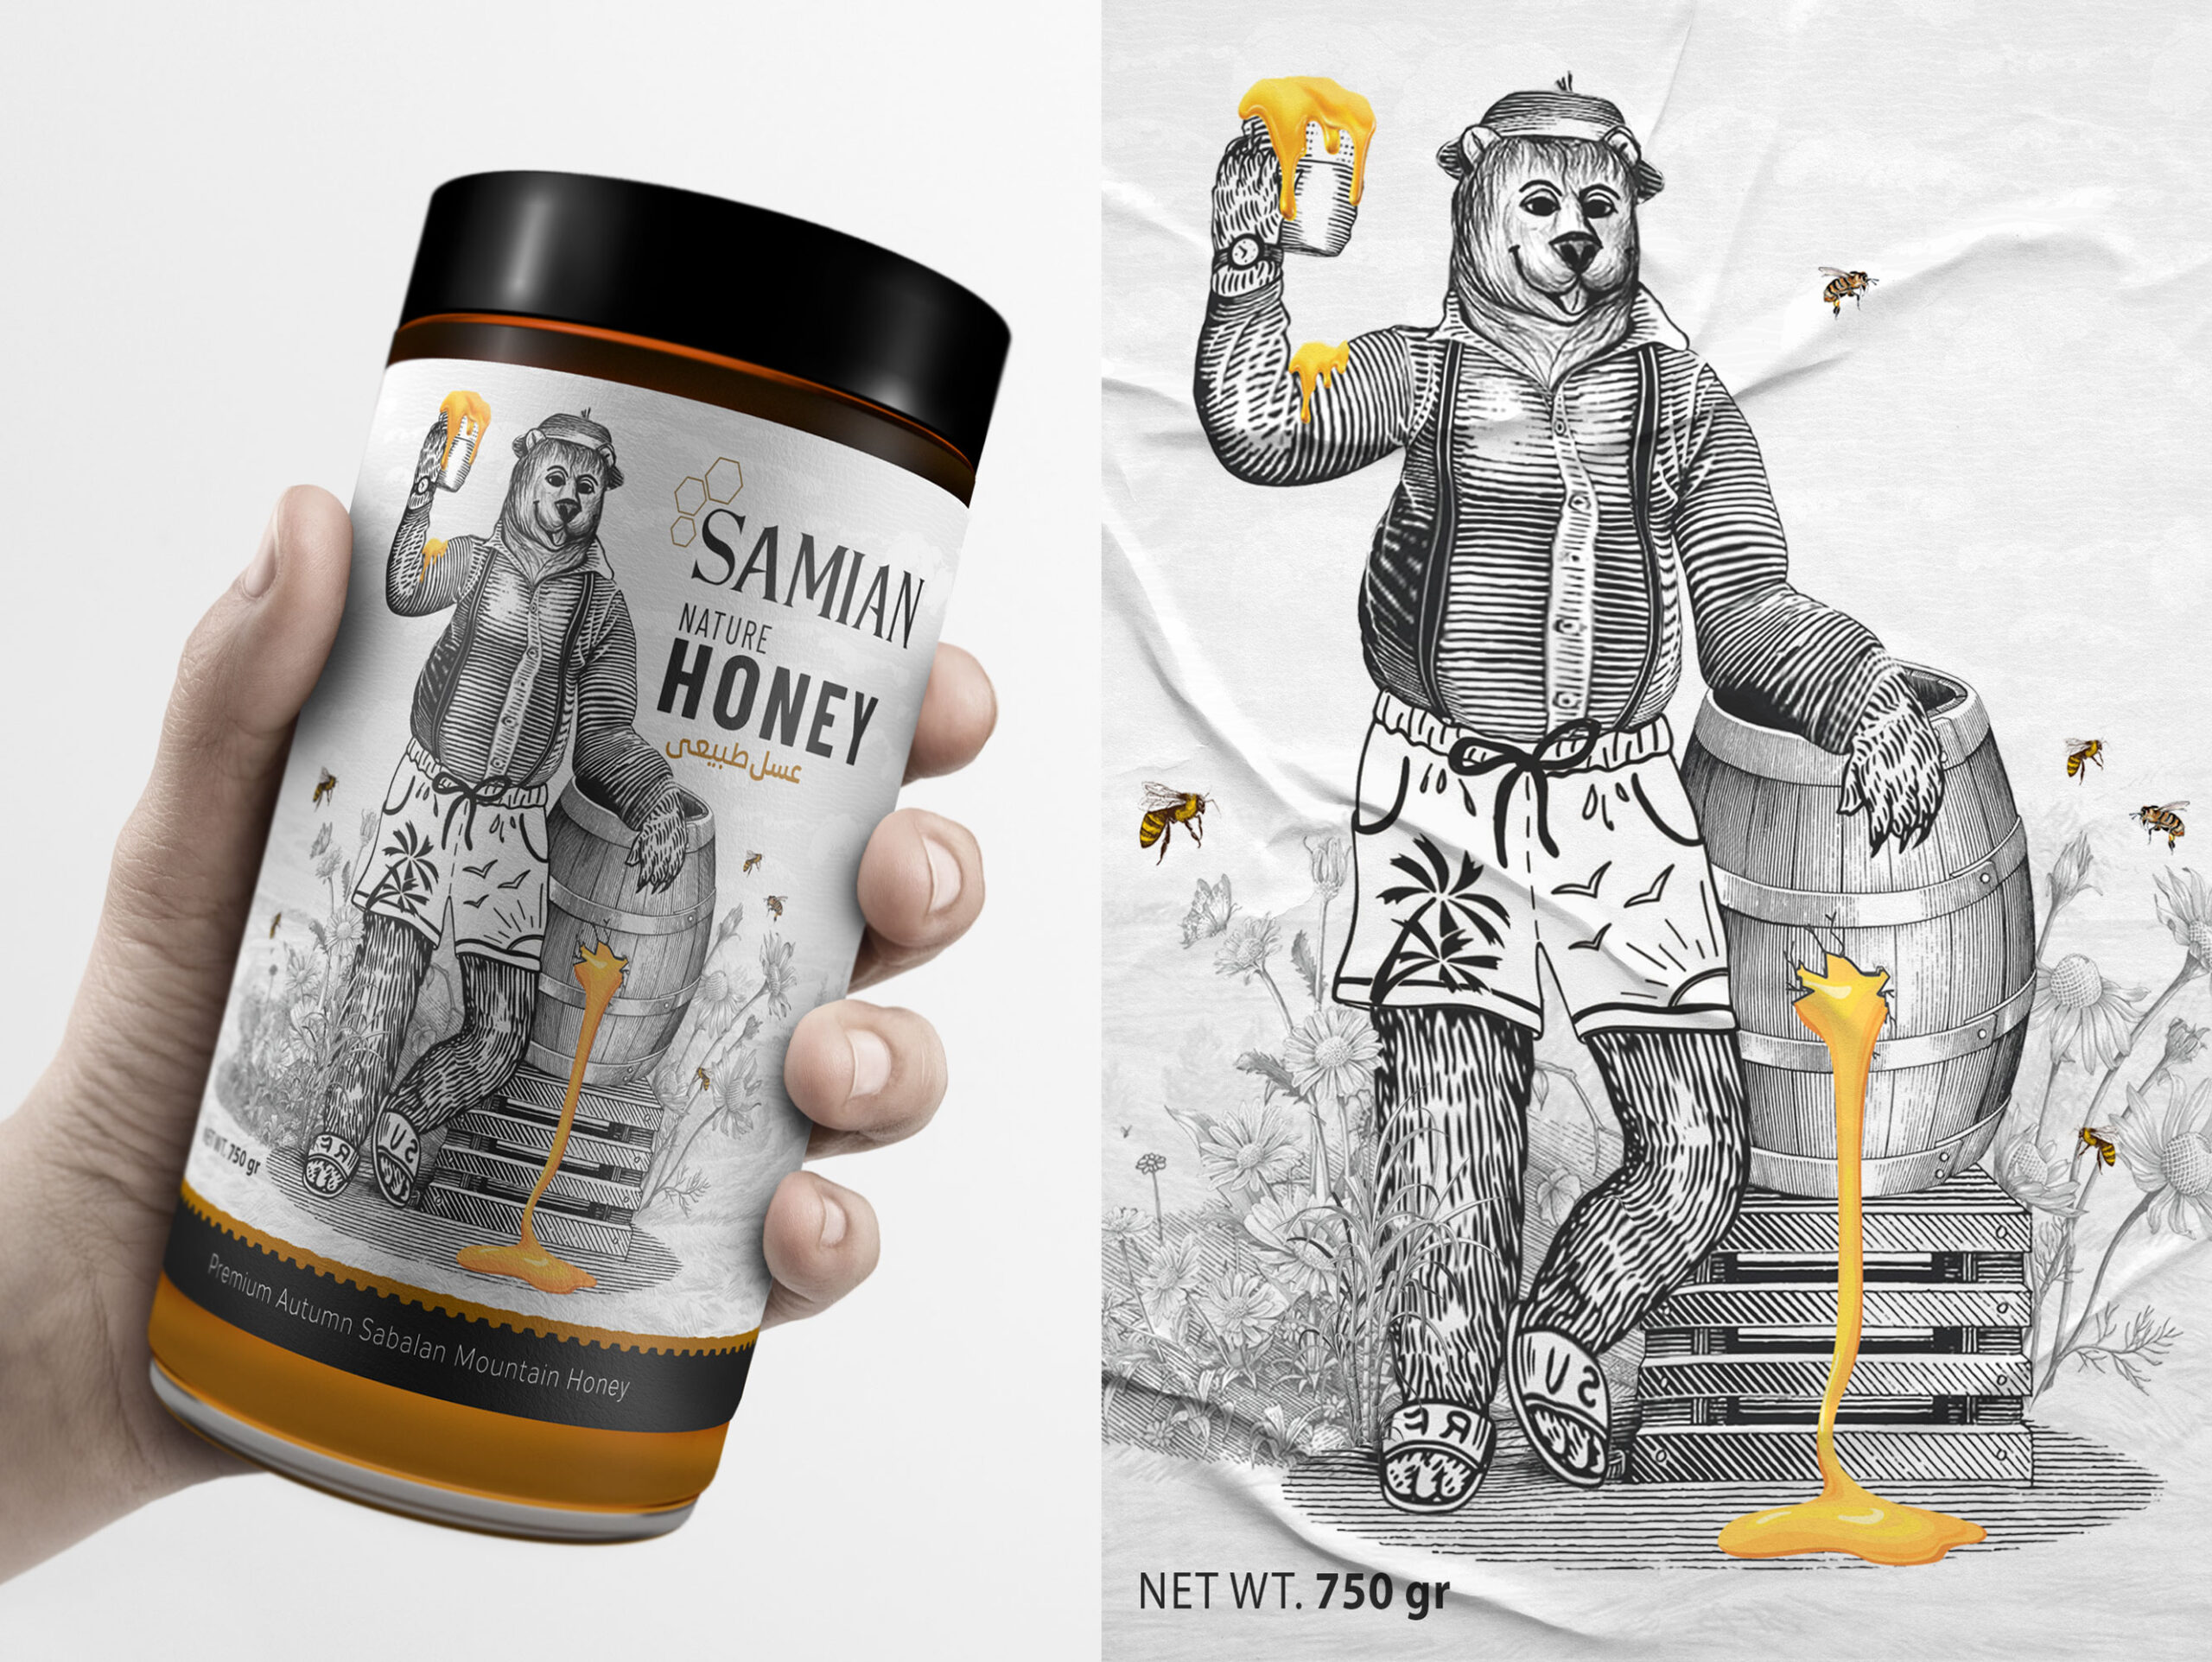 铅笔素描画的蜂蜜包装设计与众不同(图7)